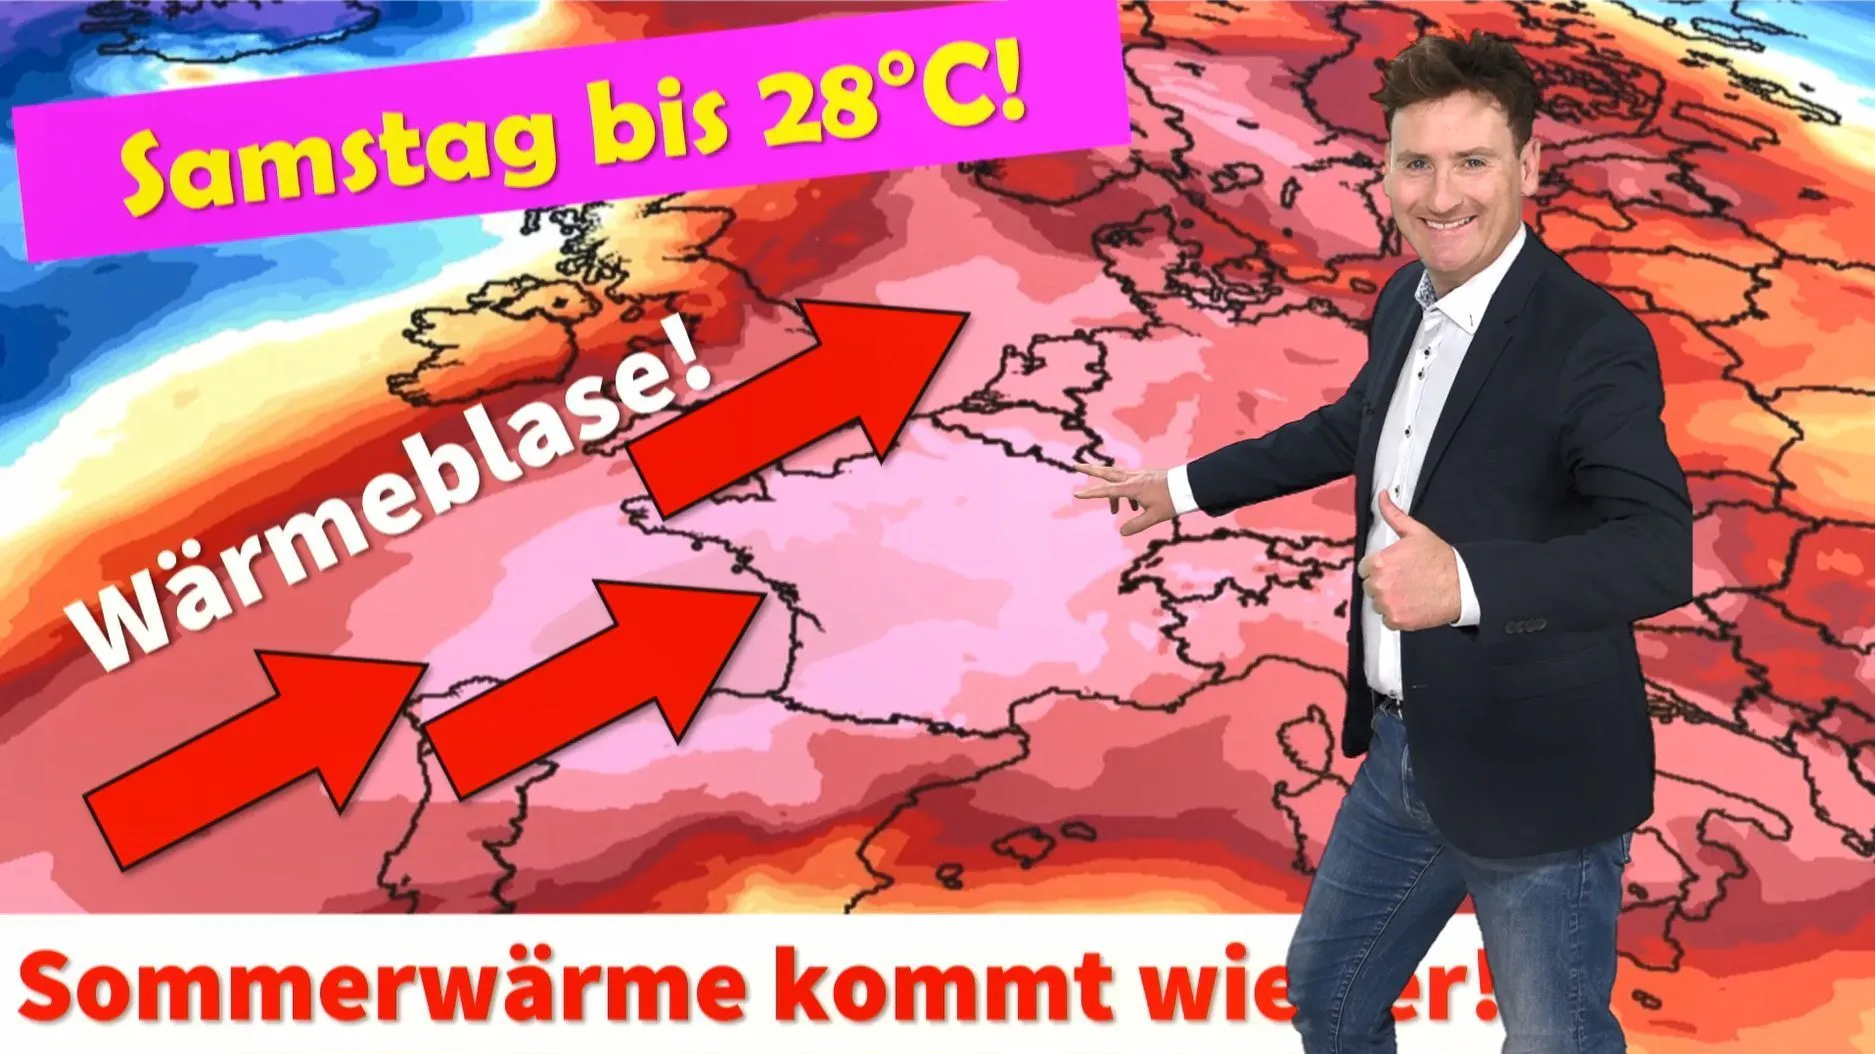 Neue Wärmeblase über Deutschland! Grillwetter am kommenden Samstag, im Süden bis zu 28°C warm!